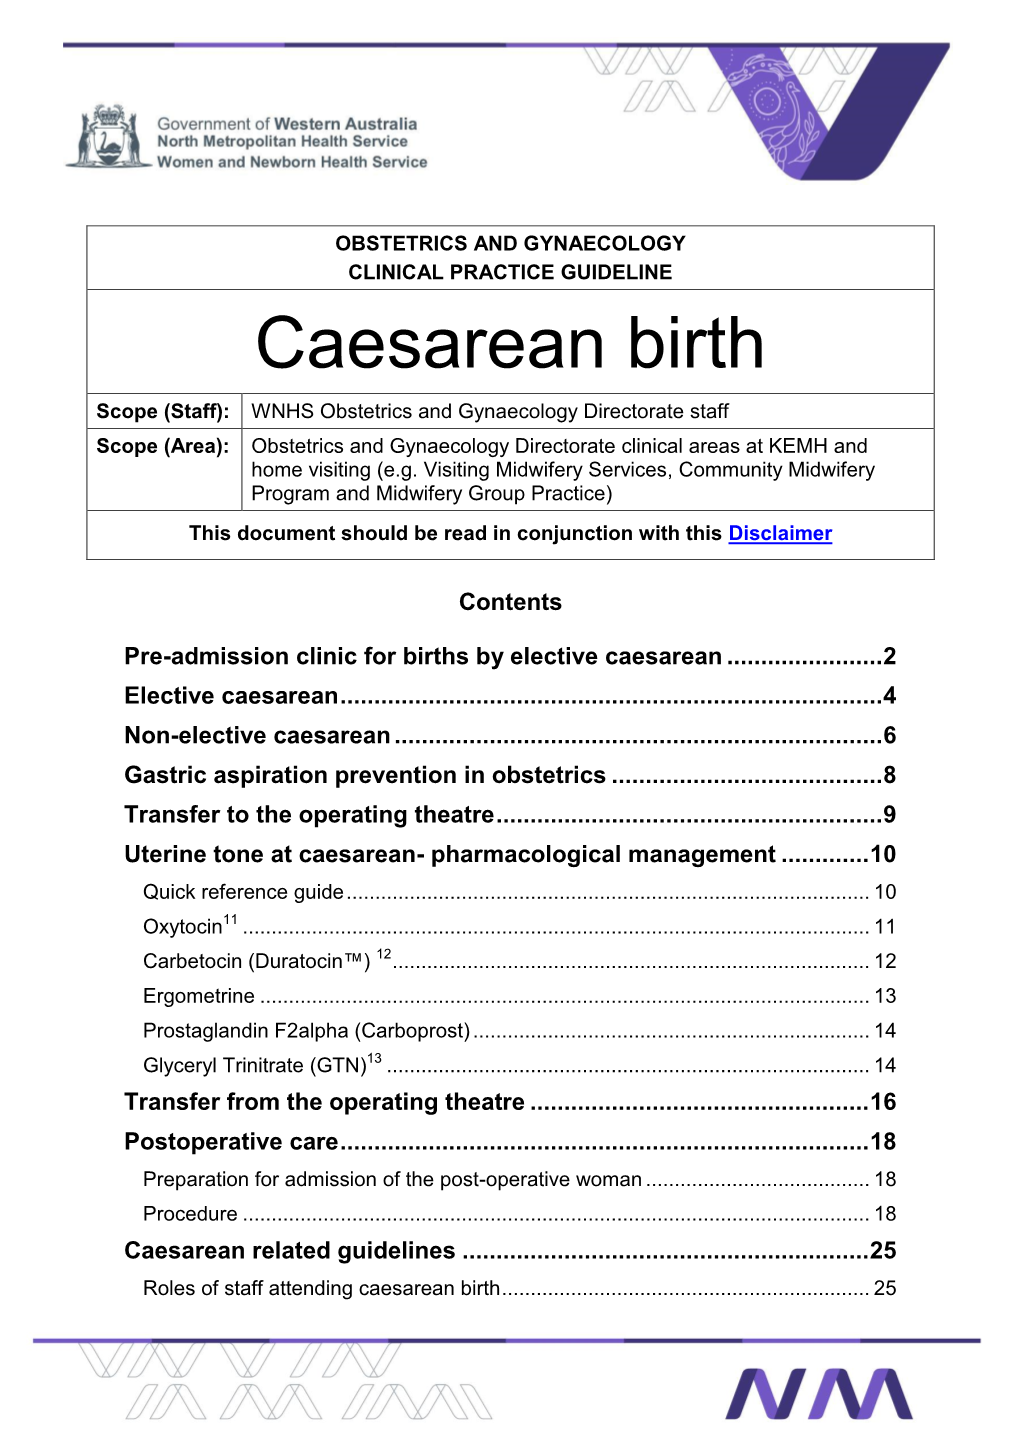 Caesarean Birth